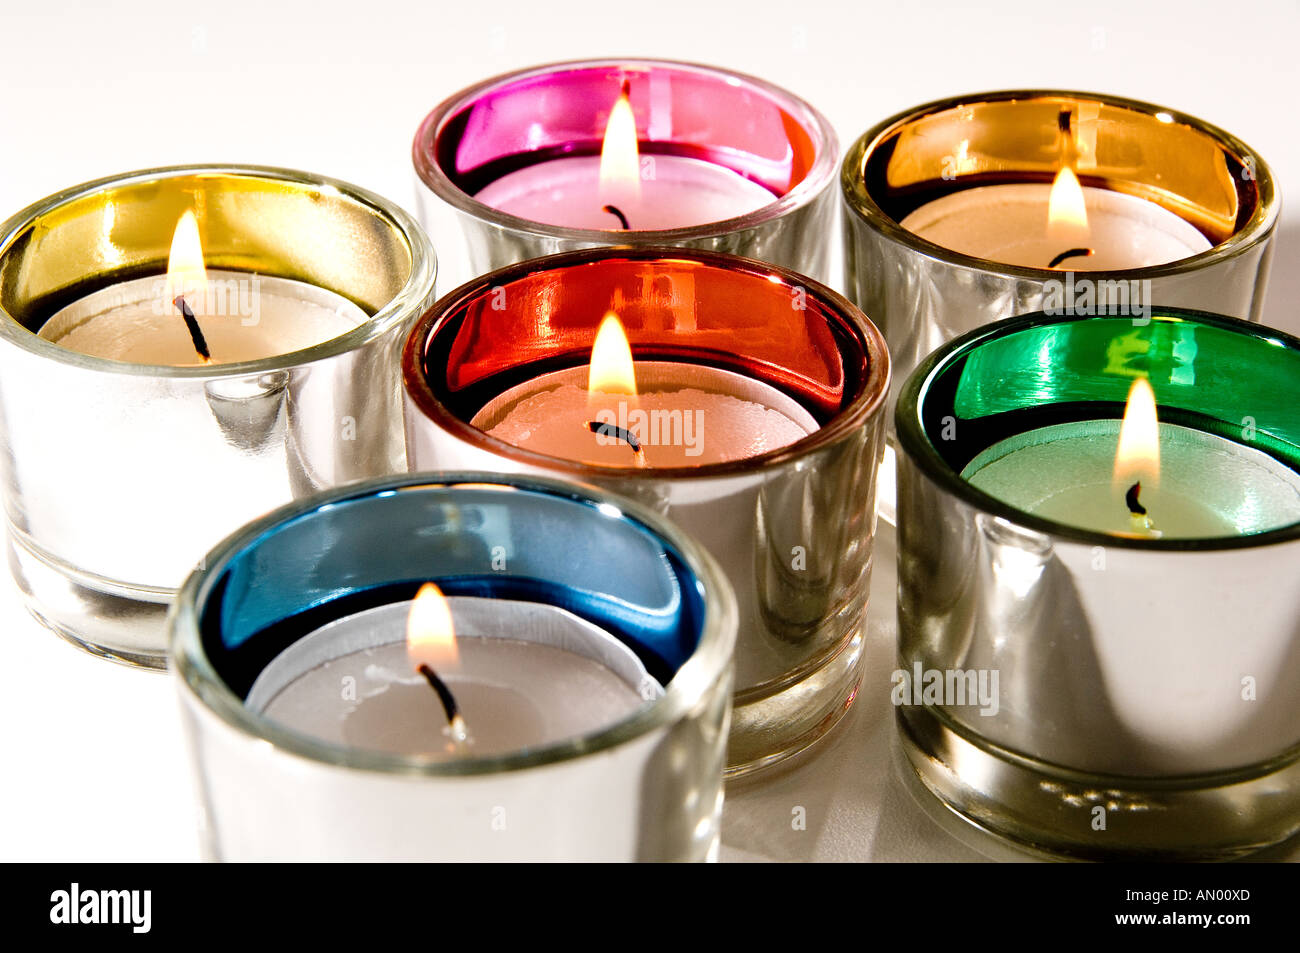 Plateau en verre multicolores s'allume avec des bougies allumées. Il est indiqué sur un fond blanc Banque D'Images